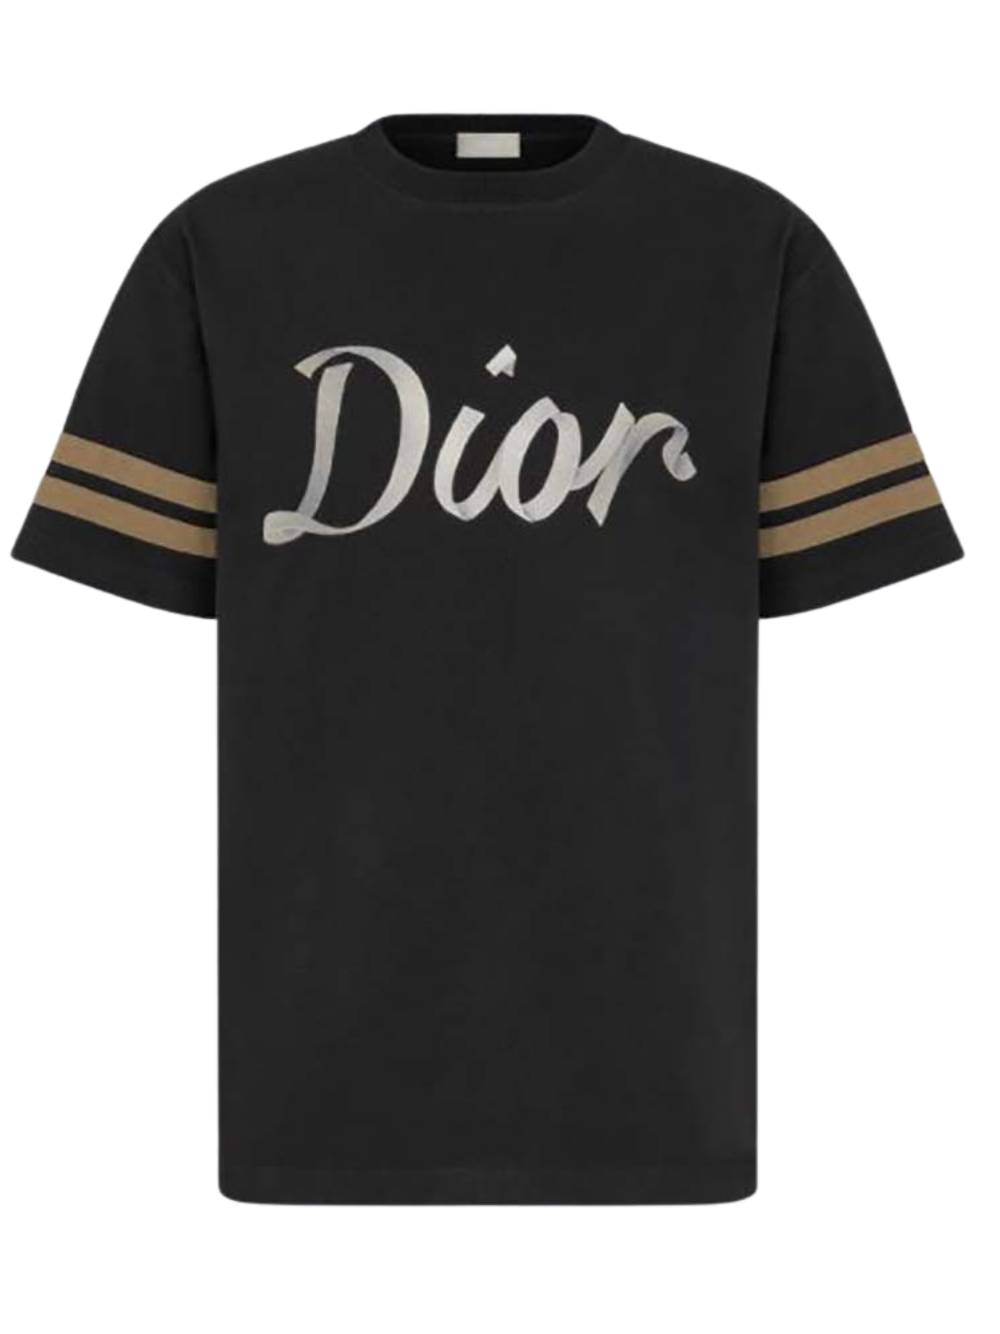 Dior 47 Print T-Shirt 293J659A0554